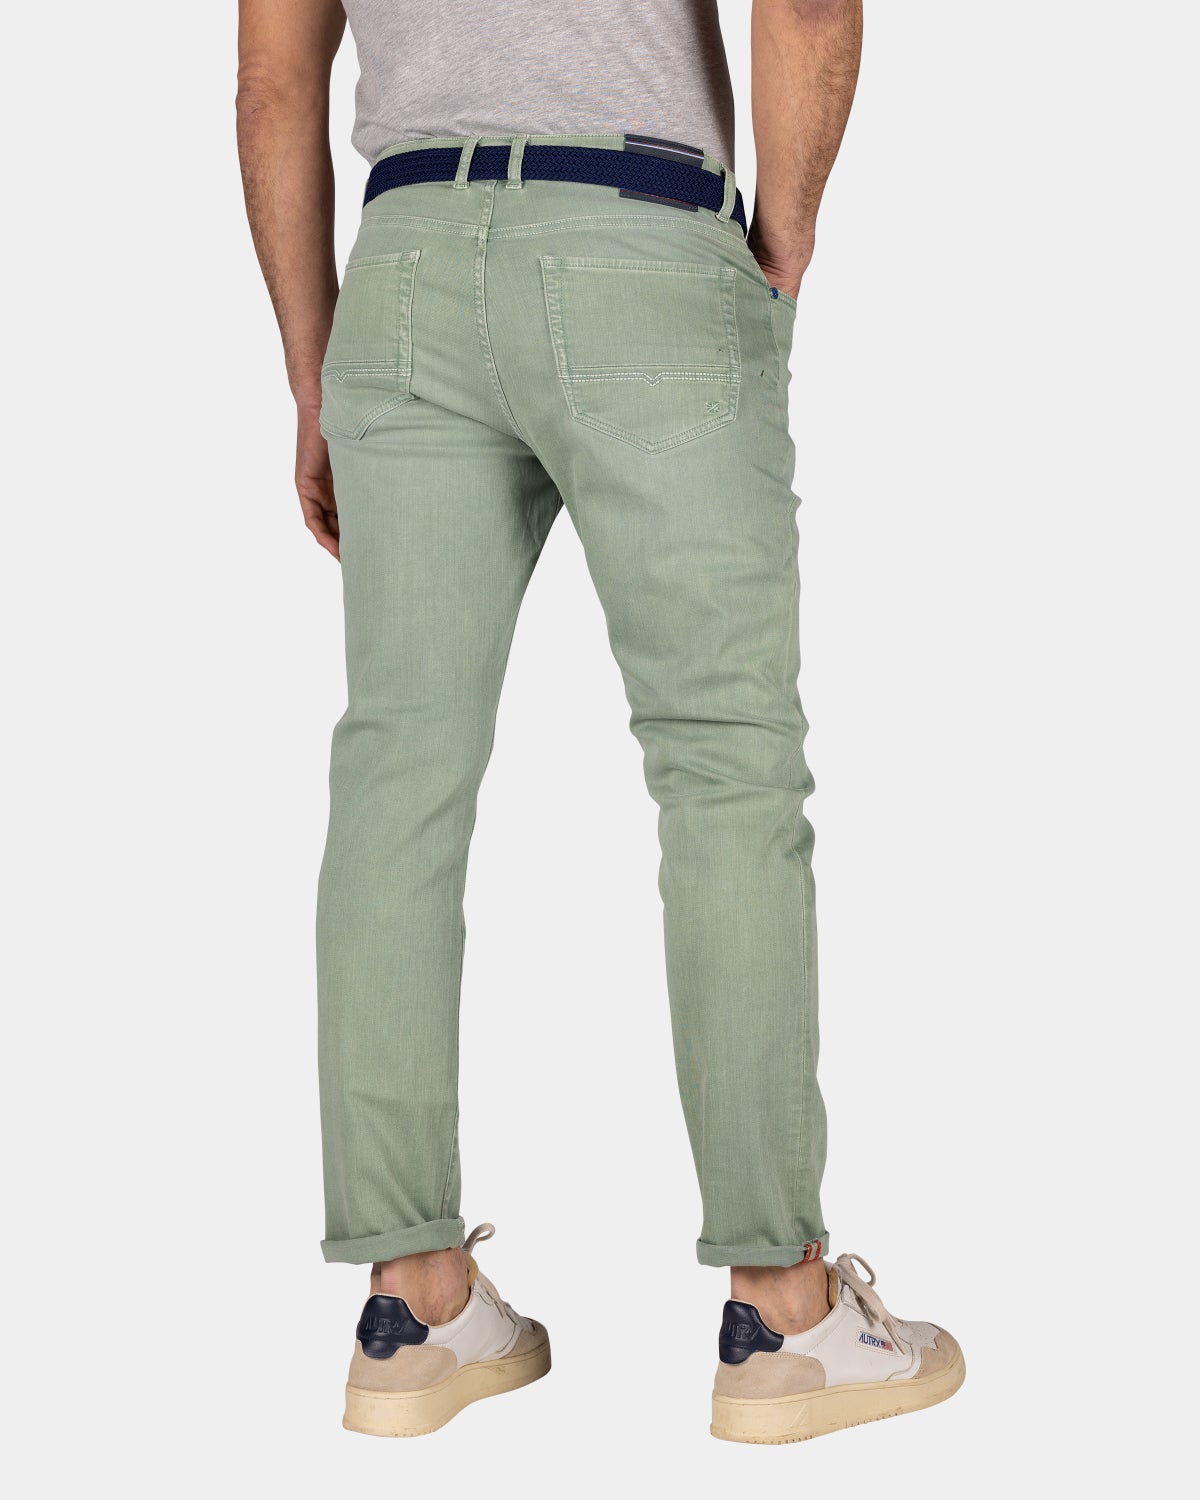 Green 5 pocket jeans - Sage